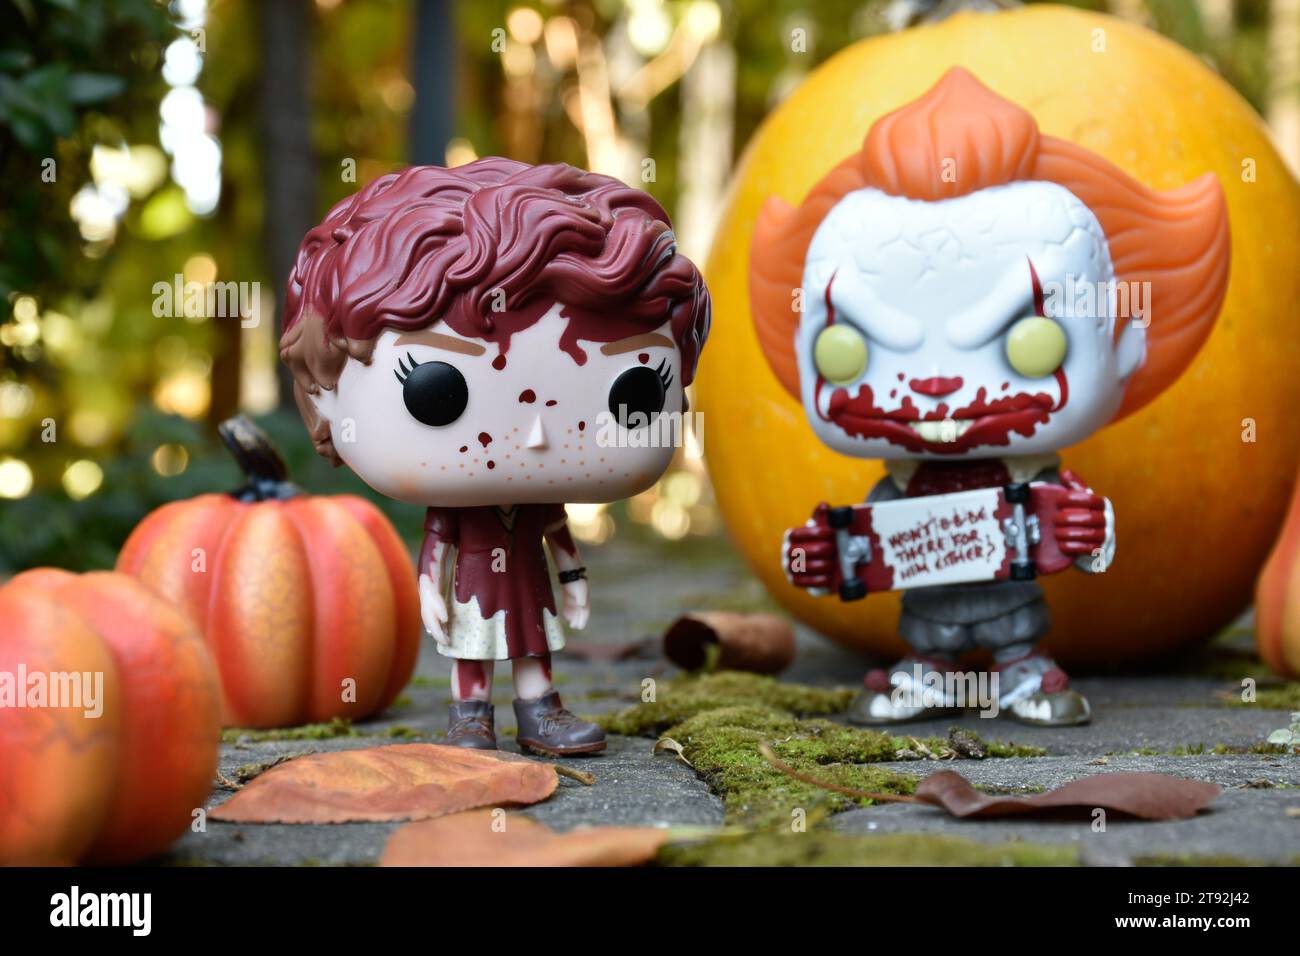 Figurines Funko Pop de Beverly Marsh et Pennywise clown du film d'horreur IT. Halloween, saison effrayante, citrouilles, décor, mousse, feuilles d'automne. Banque D'Images